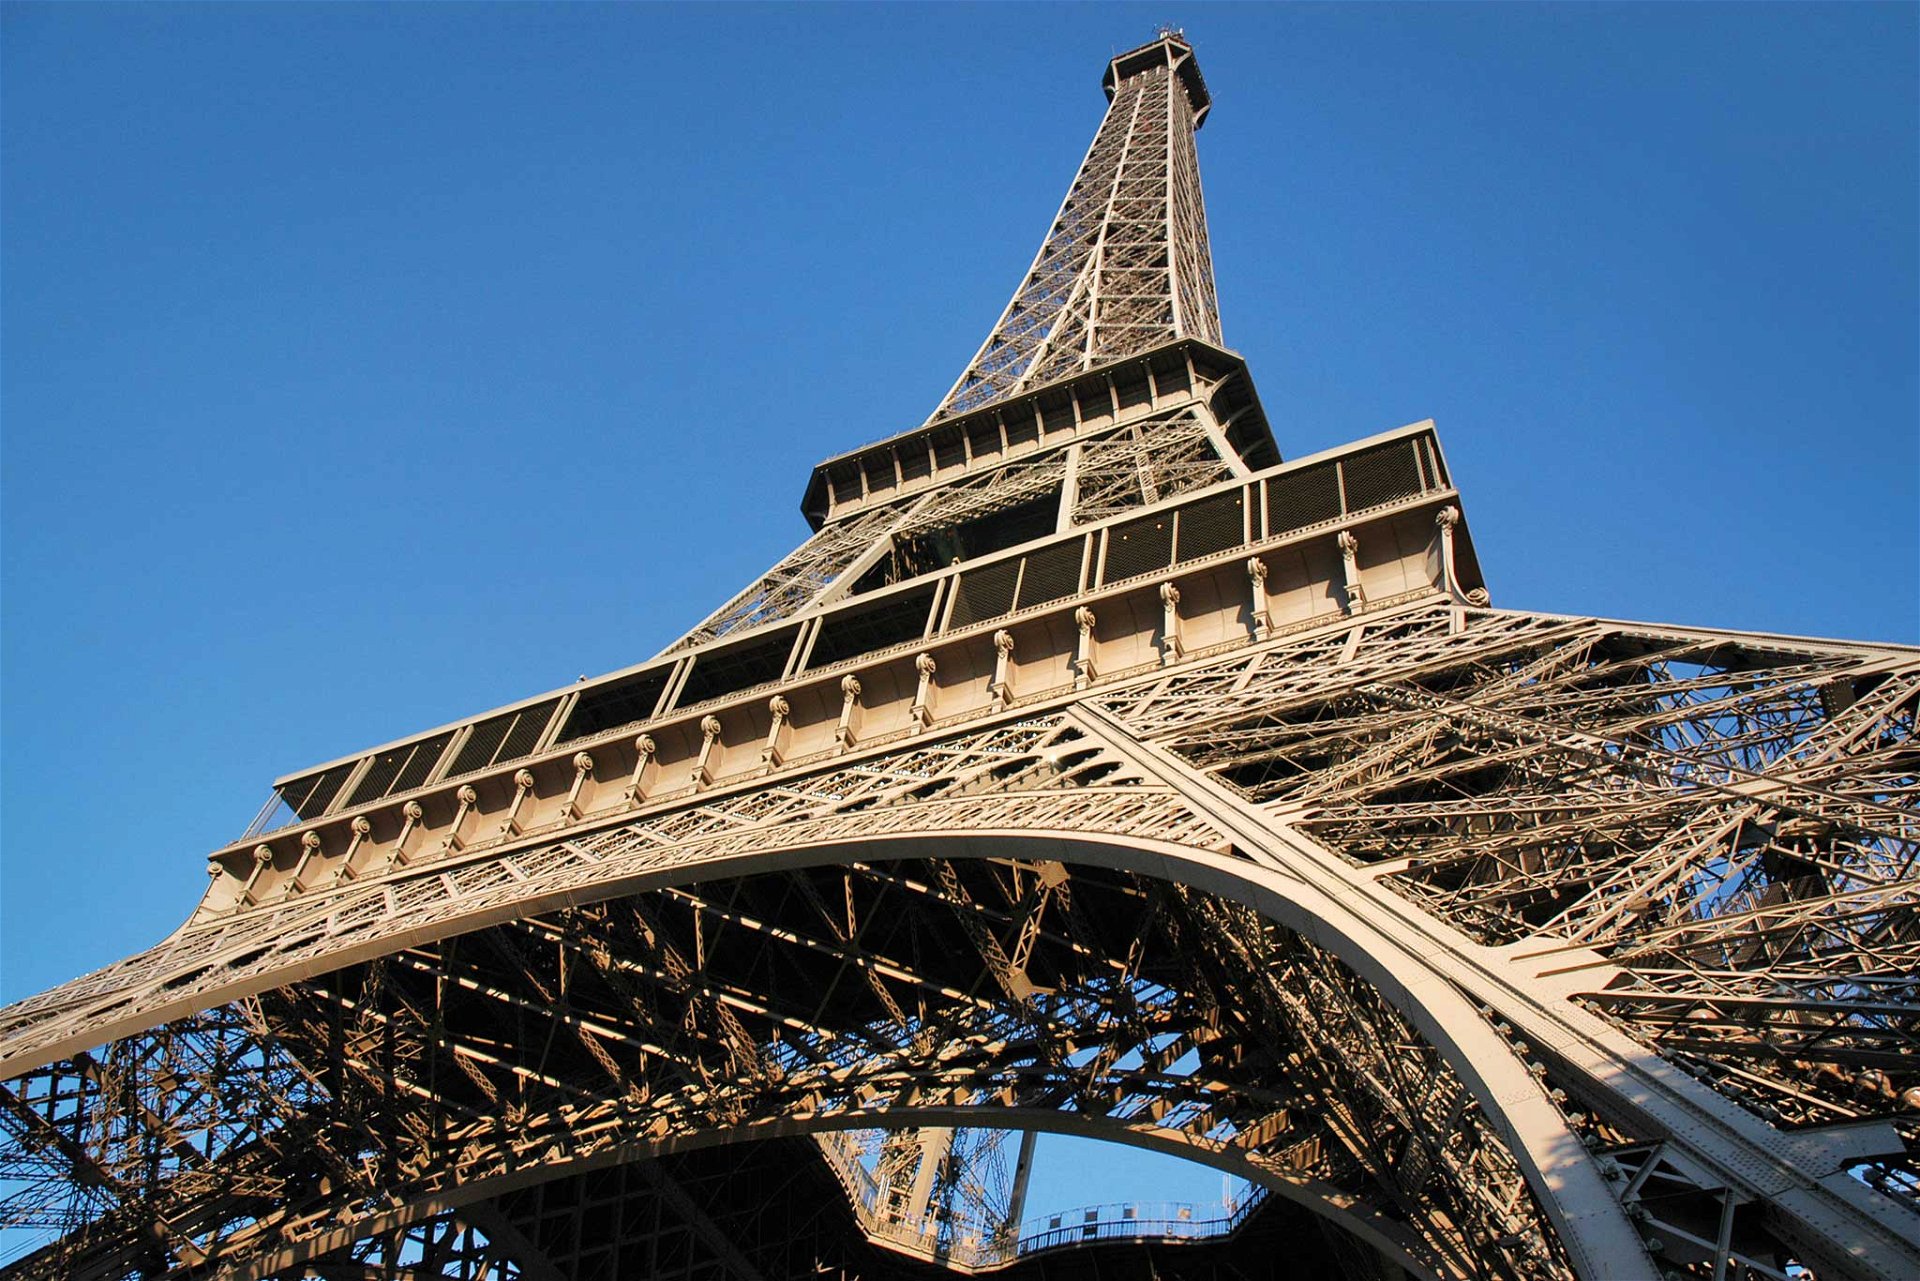 Eiffelturm, Paris Eine gewisse Kreativität kann man den Kritikern oft nicht absprechen: »Wirklich tragische Straßenlaterne« und »Skelett von einem Glockenturm« bringt einen aus heutiger Sicht zum Schmunzeln. Bei der Eröffnung 1889 waren die Spötter großteils verstummt, und der Eiffelturm avancierte schnell zur Ikone der Architektur und der Ingenieurskunst. Wobei man aber zugeben muss, dass er eher als Wahrzeichen denn als Architektur gesehen wird.